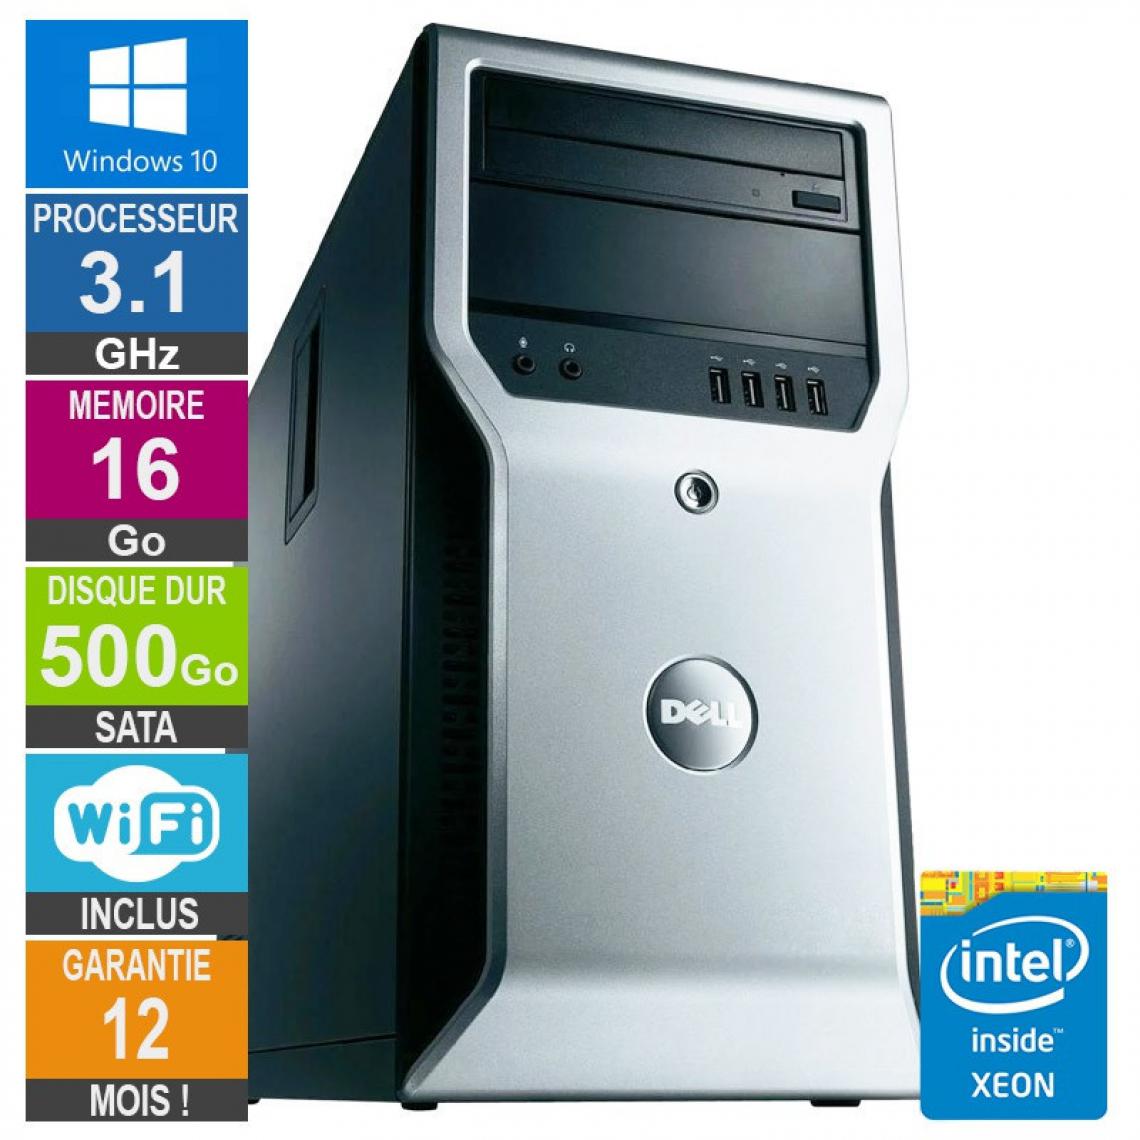 Dell - PC Dell Precision T1600 Xeon E3-1225 3.10GHz 16Go/500Go Wifi W10 - PC Fixe